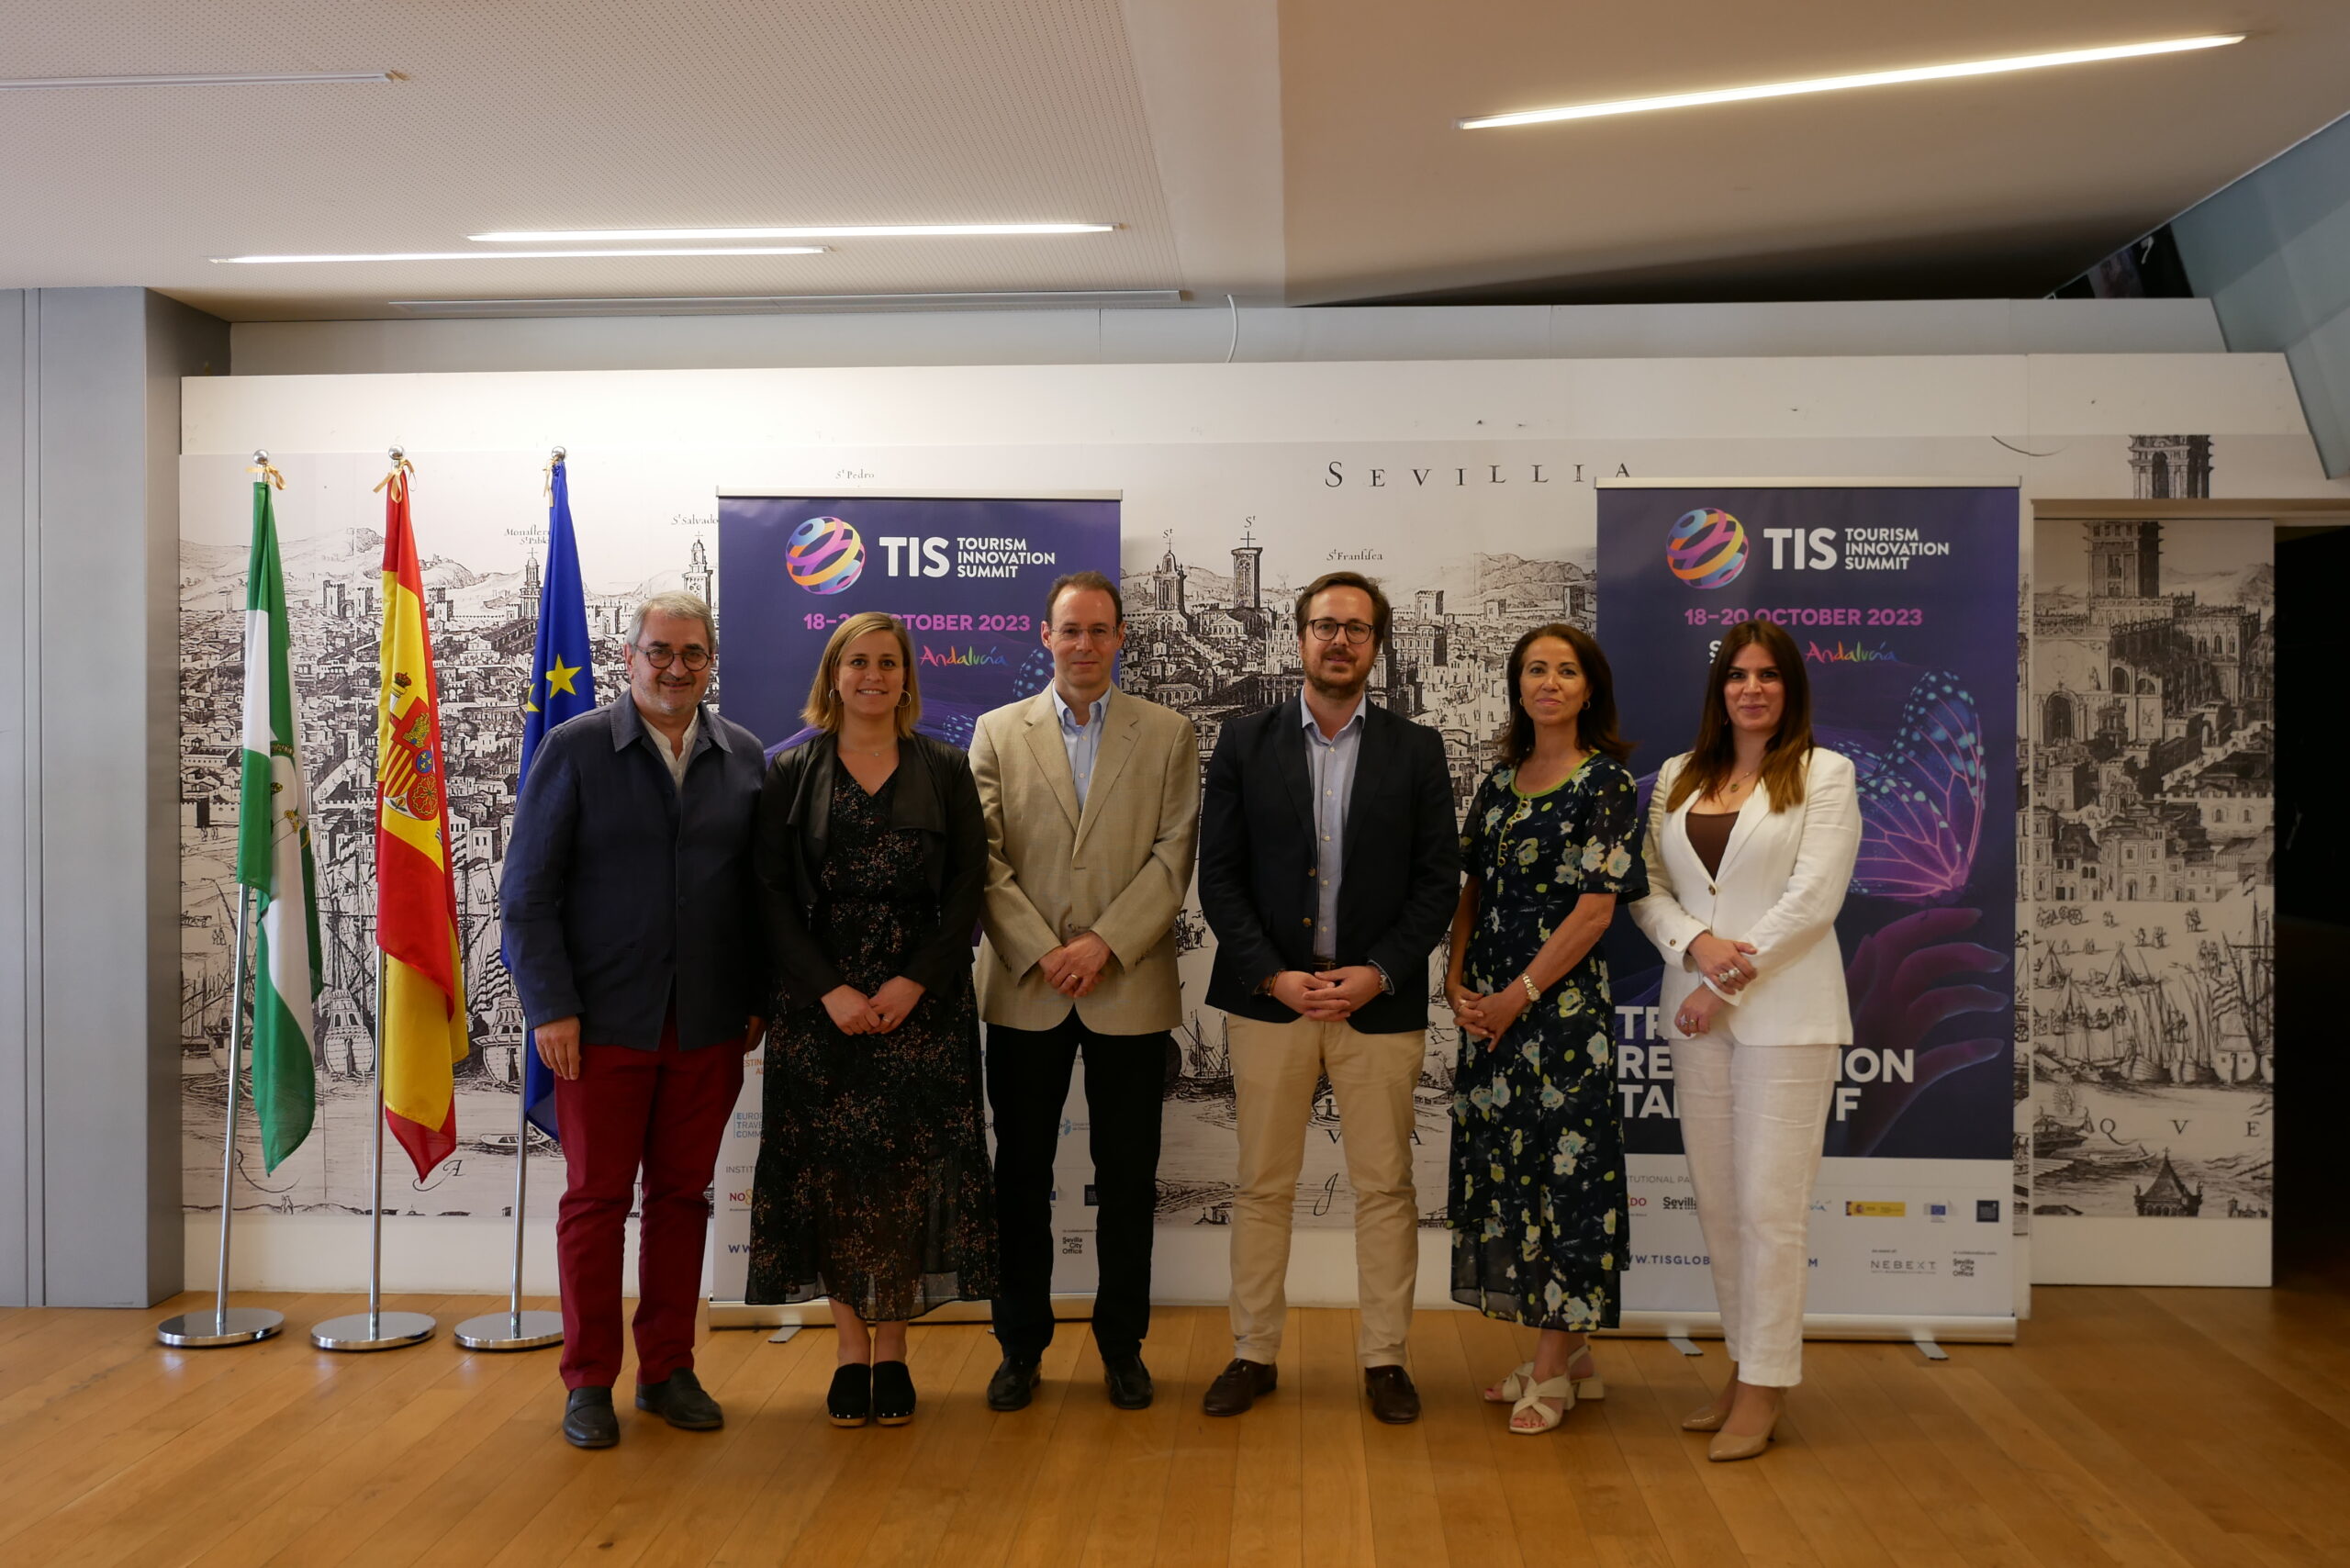 TIS – Tourism Innovation Summit 2023 vuelve a Sevilla para liderar la innovación en la industria turística a nivel global